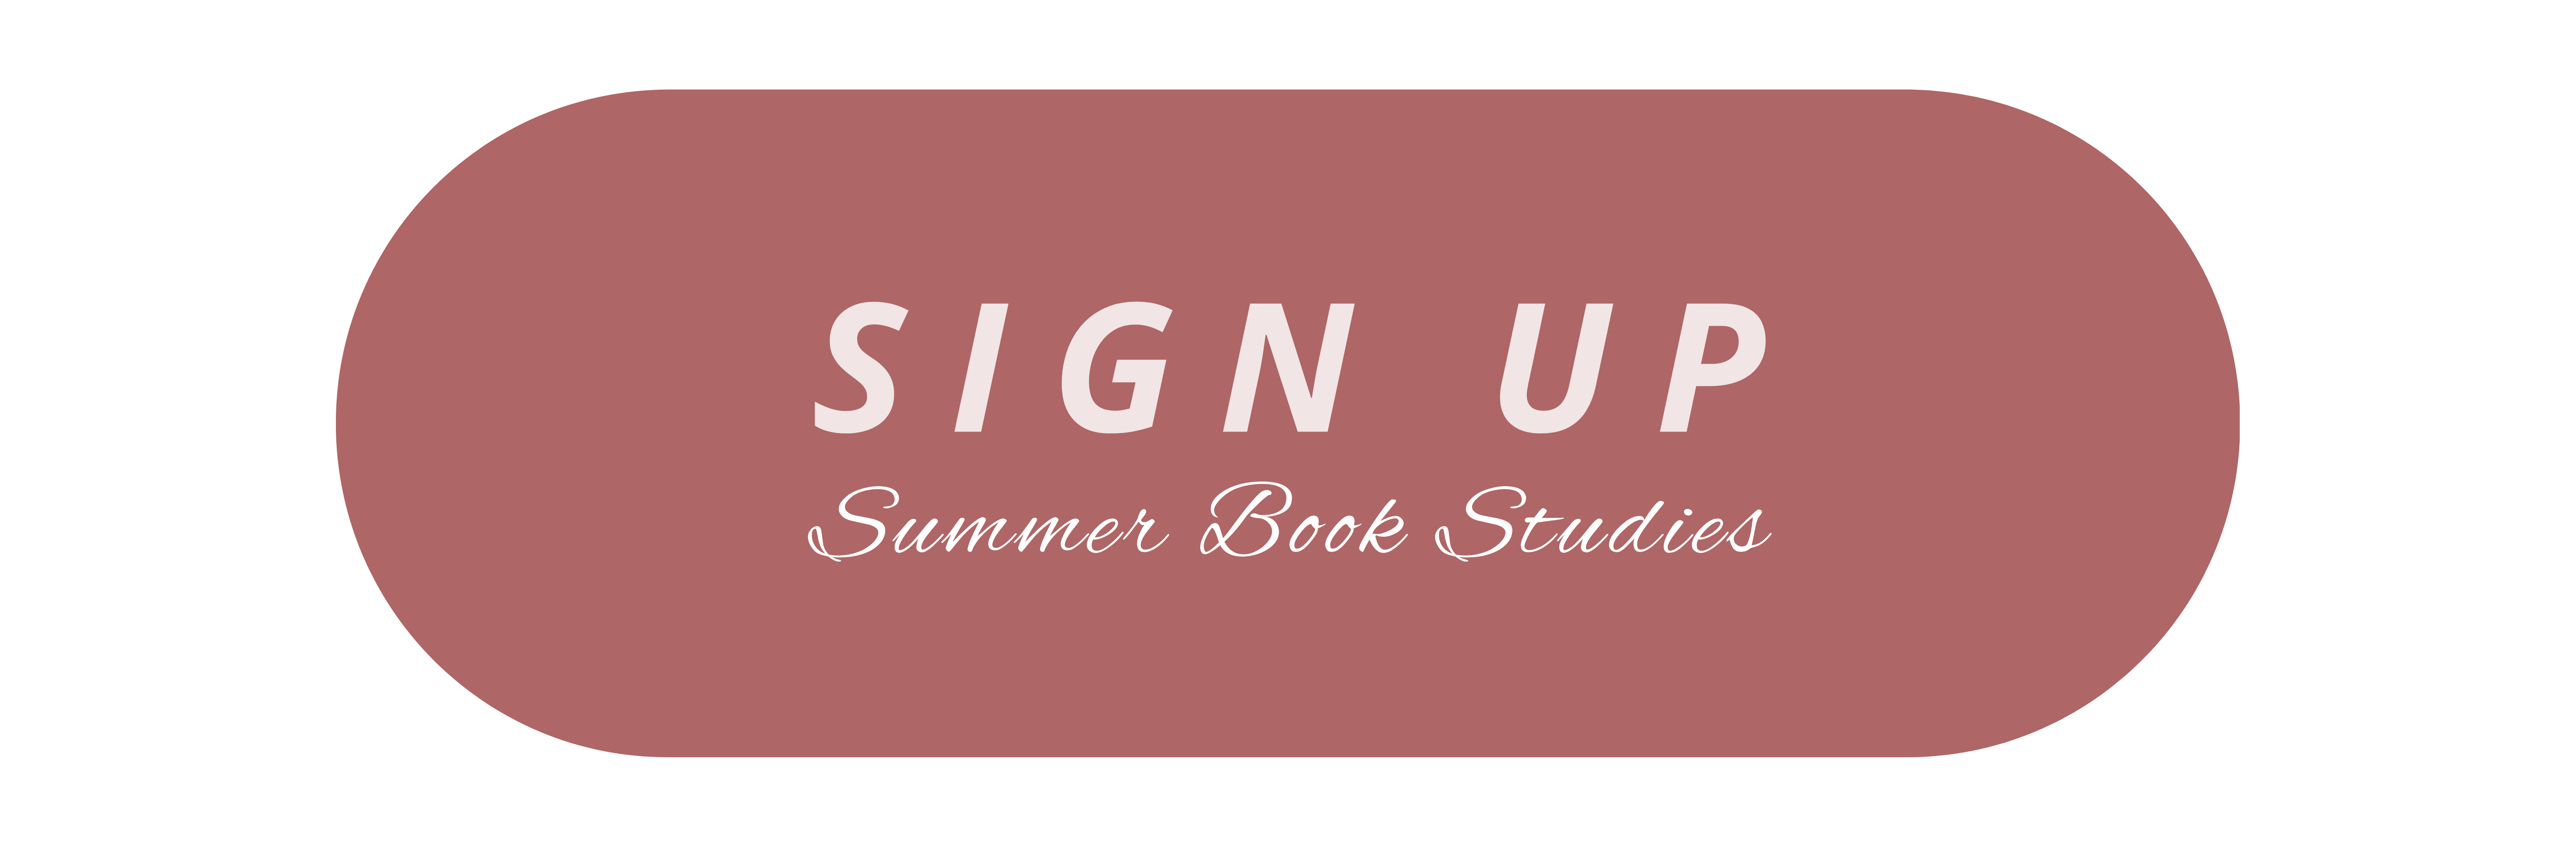 240601 Womens Summer Book Studies Button